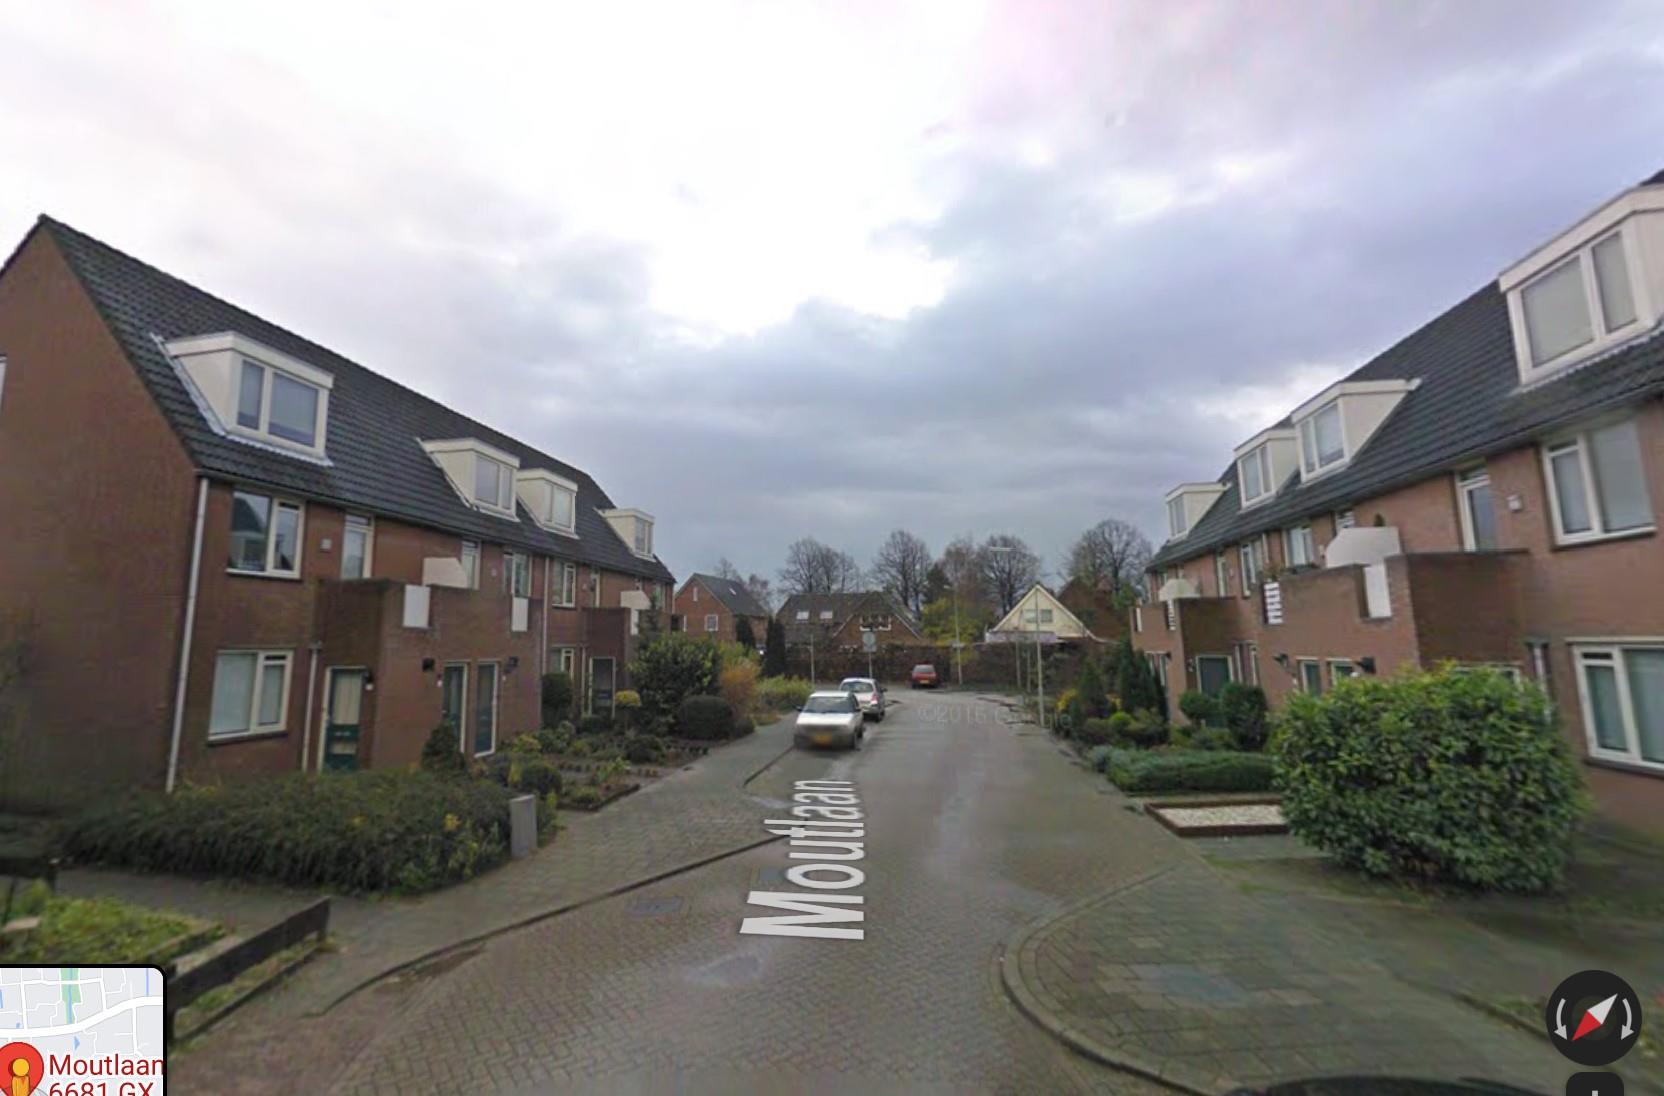 Moutlaan 17, 6681 GX Bemmel, Nederland